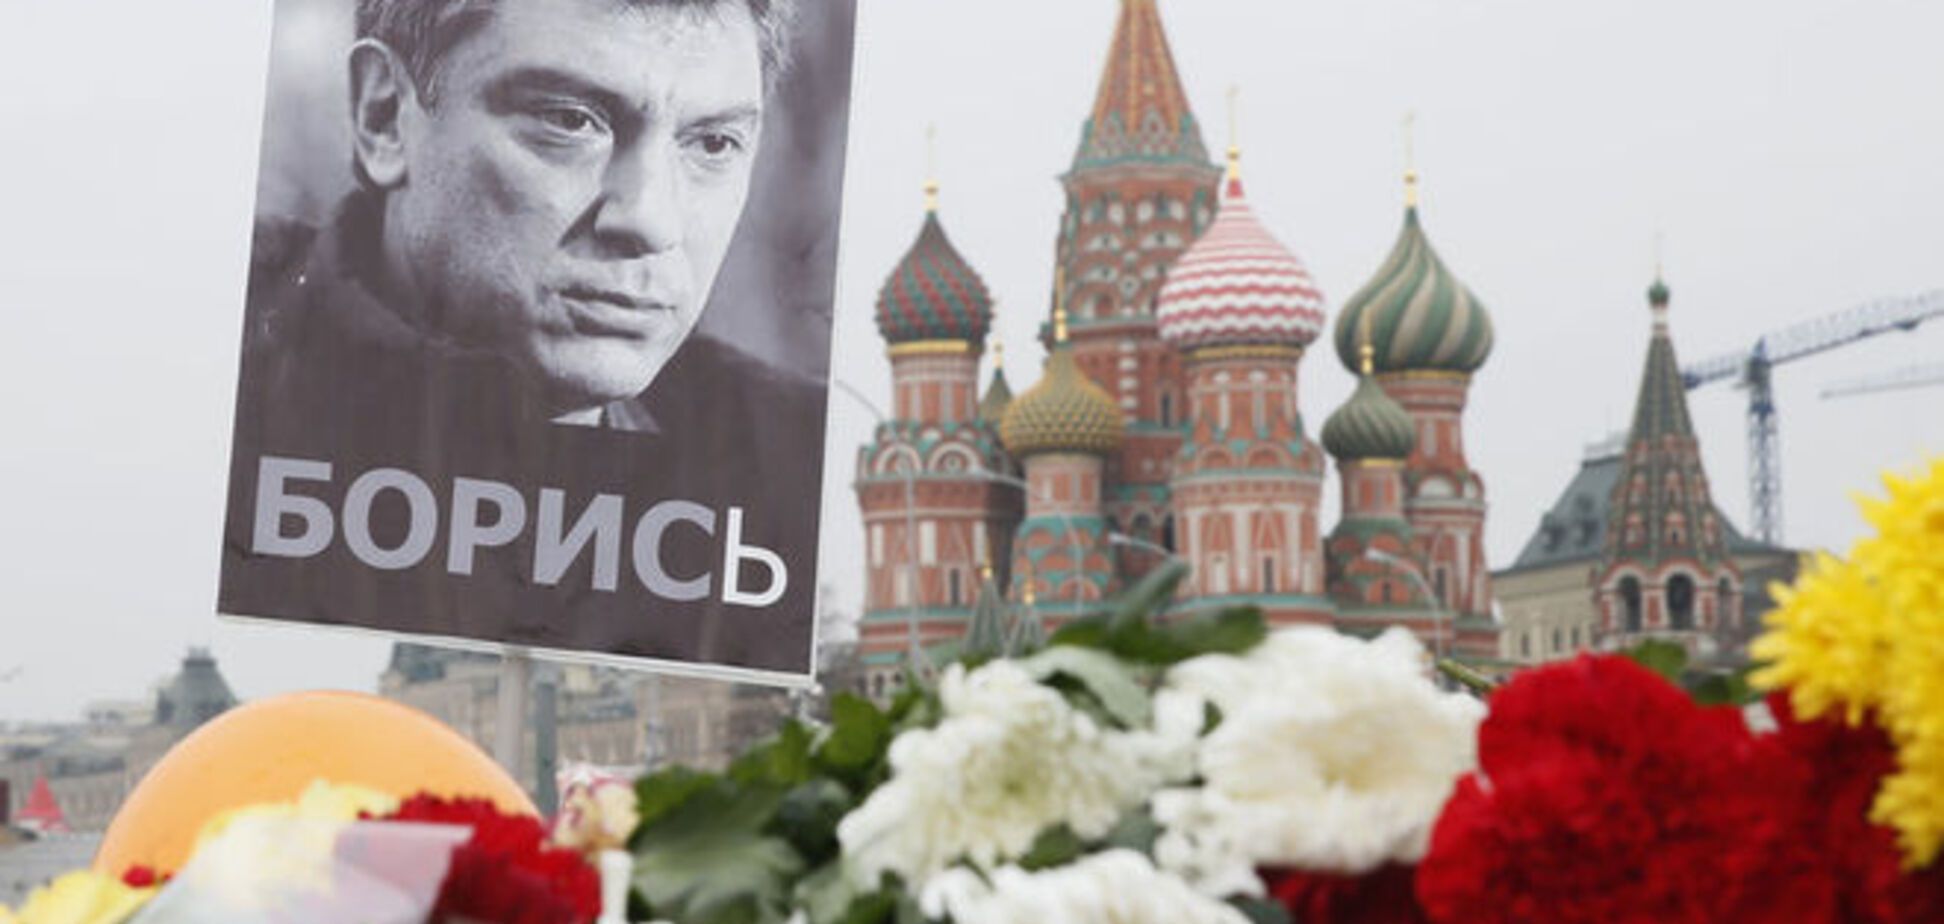 СМИ: подозреваемого в убийстве Немцова, возможно, нет в живых